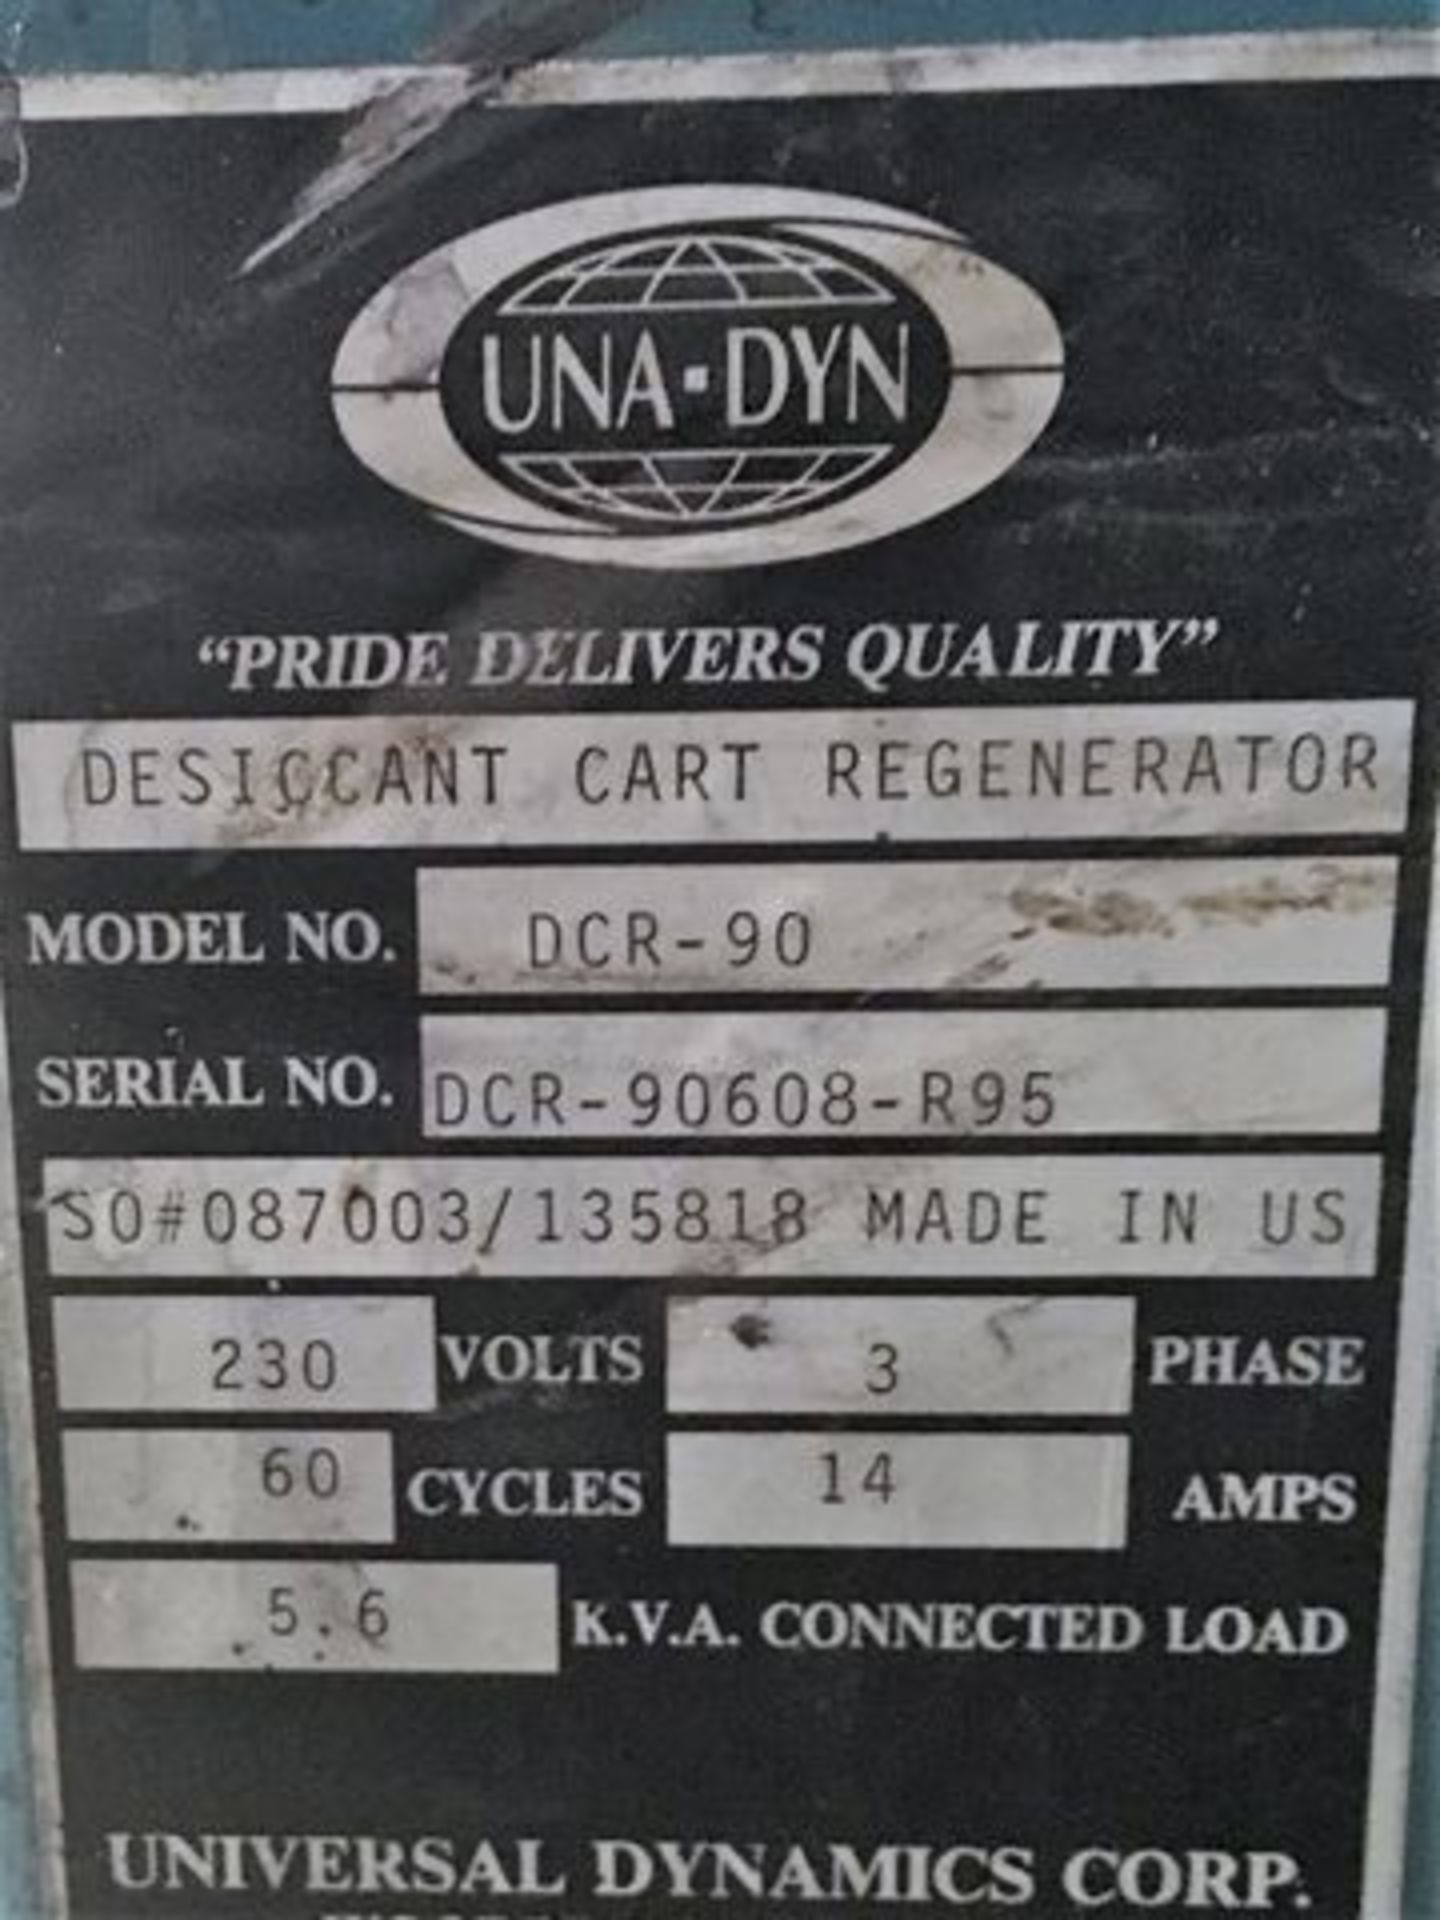 UNA-DYN DCR-90 Desiccant Cart Regenerator - Image 5 of 6